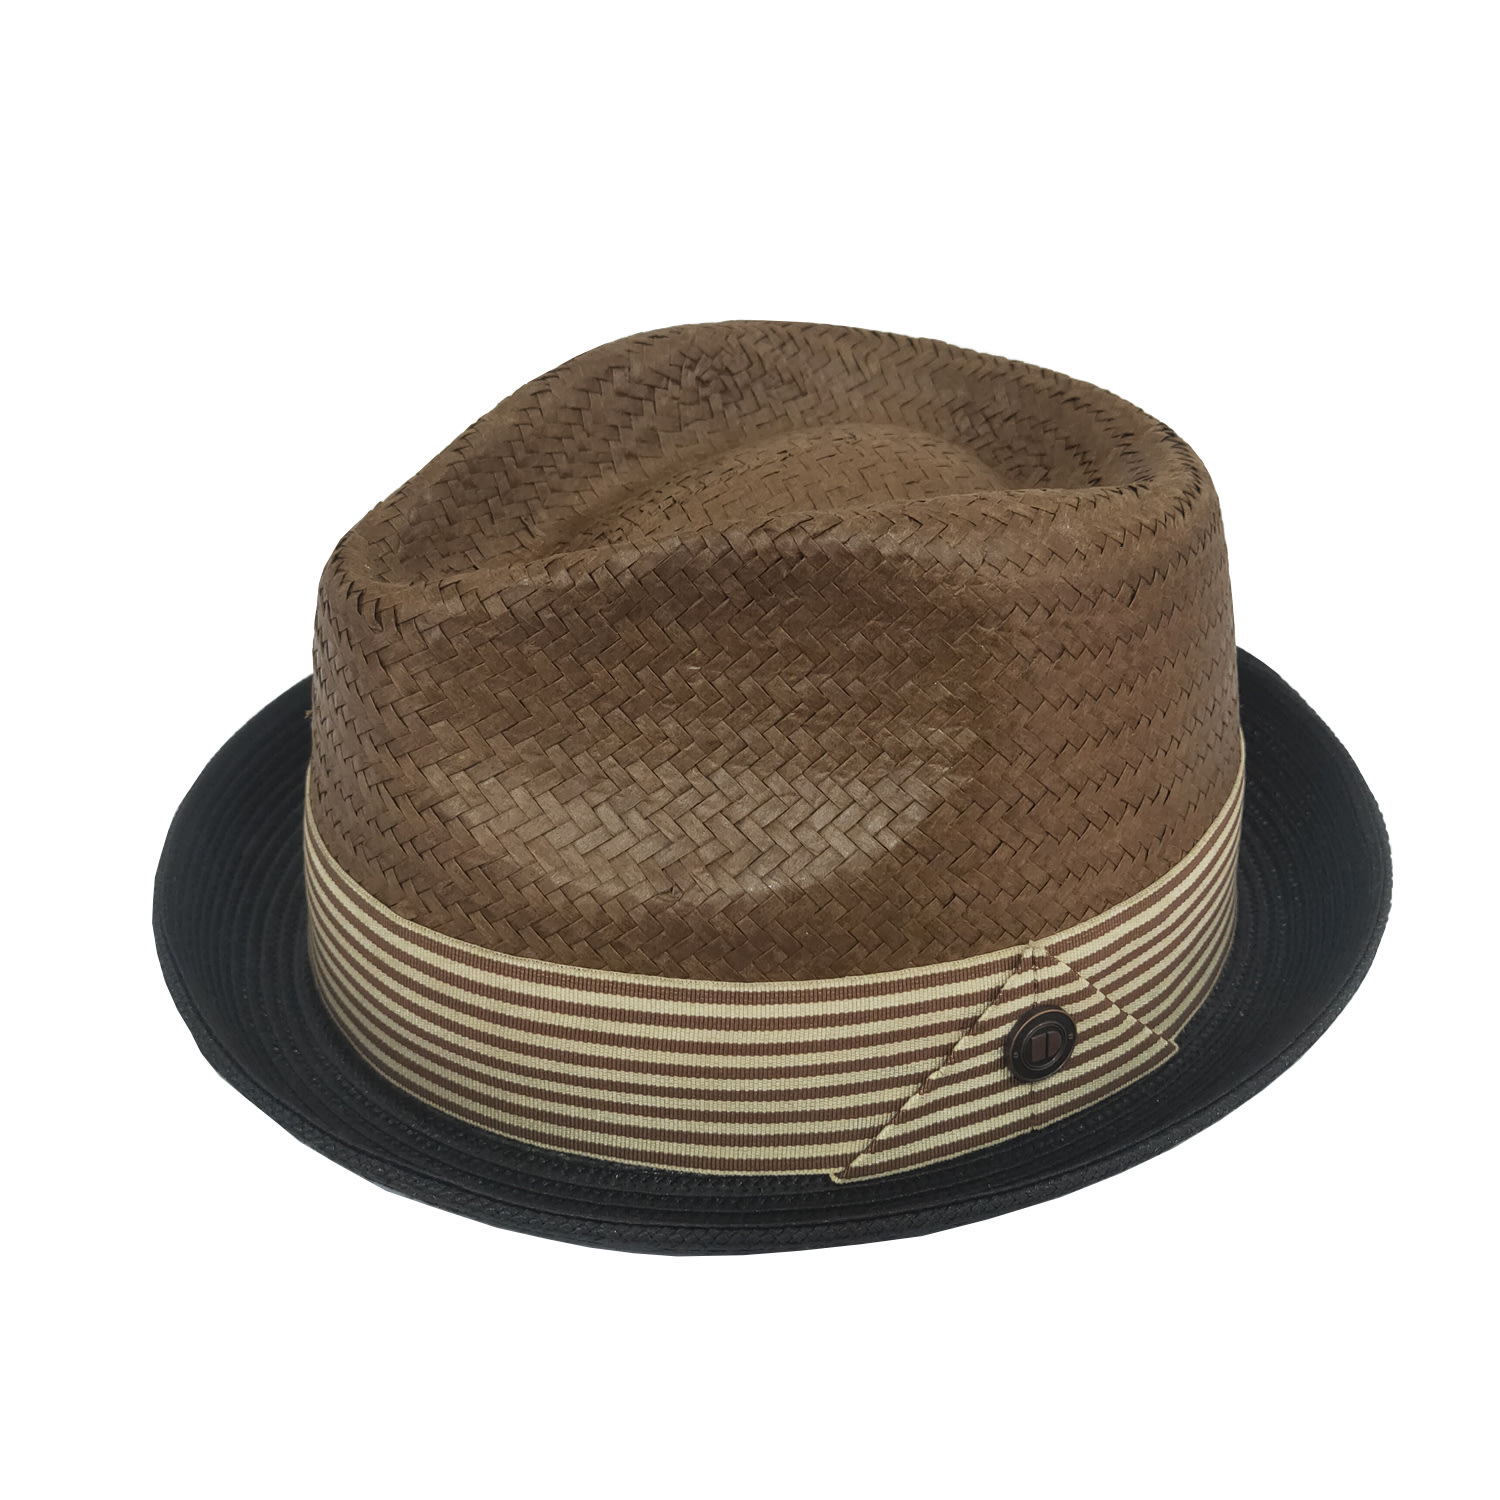 Dasmarca Otis Summer Hat For Men Brown Straw Trilby Lightweight Hat 55Cm Dasmarca Hats